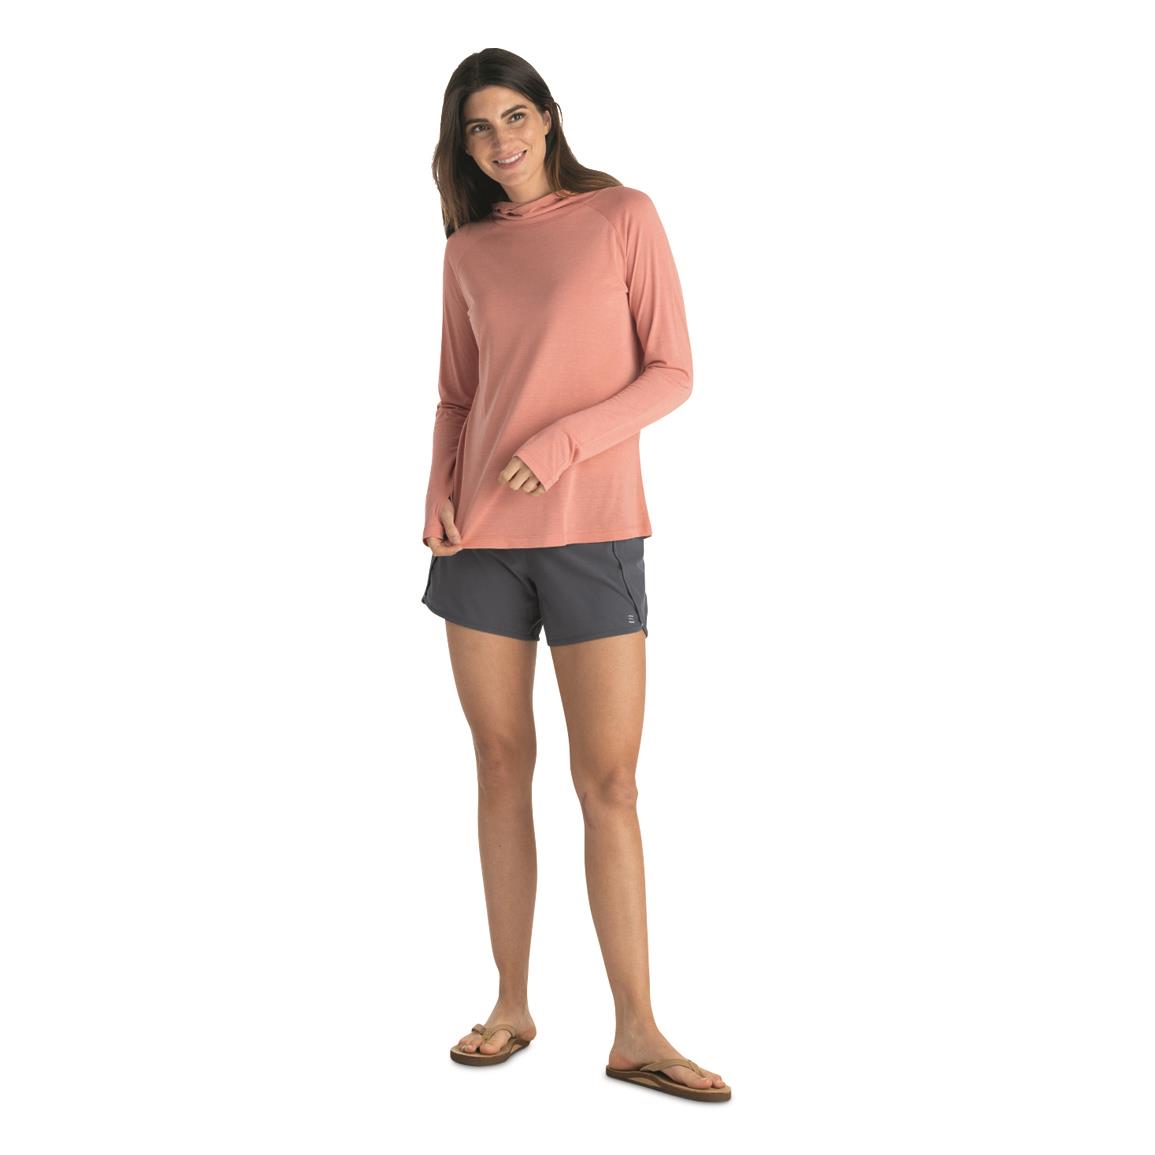 Mountain Hardwear Women's Stretch Long Sleeve Hoodie - 722299, Sweatshirts,  Hoodies & Fleece at Sportsman's Guide